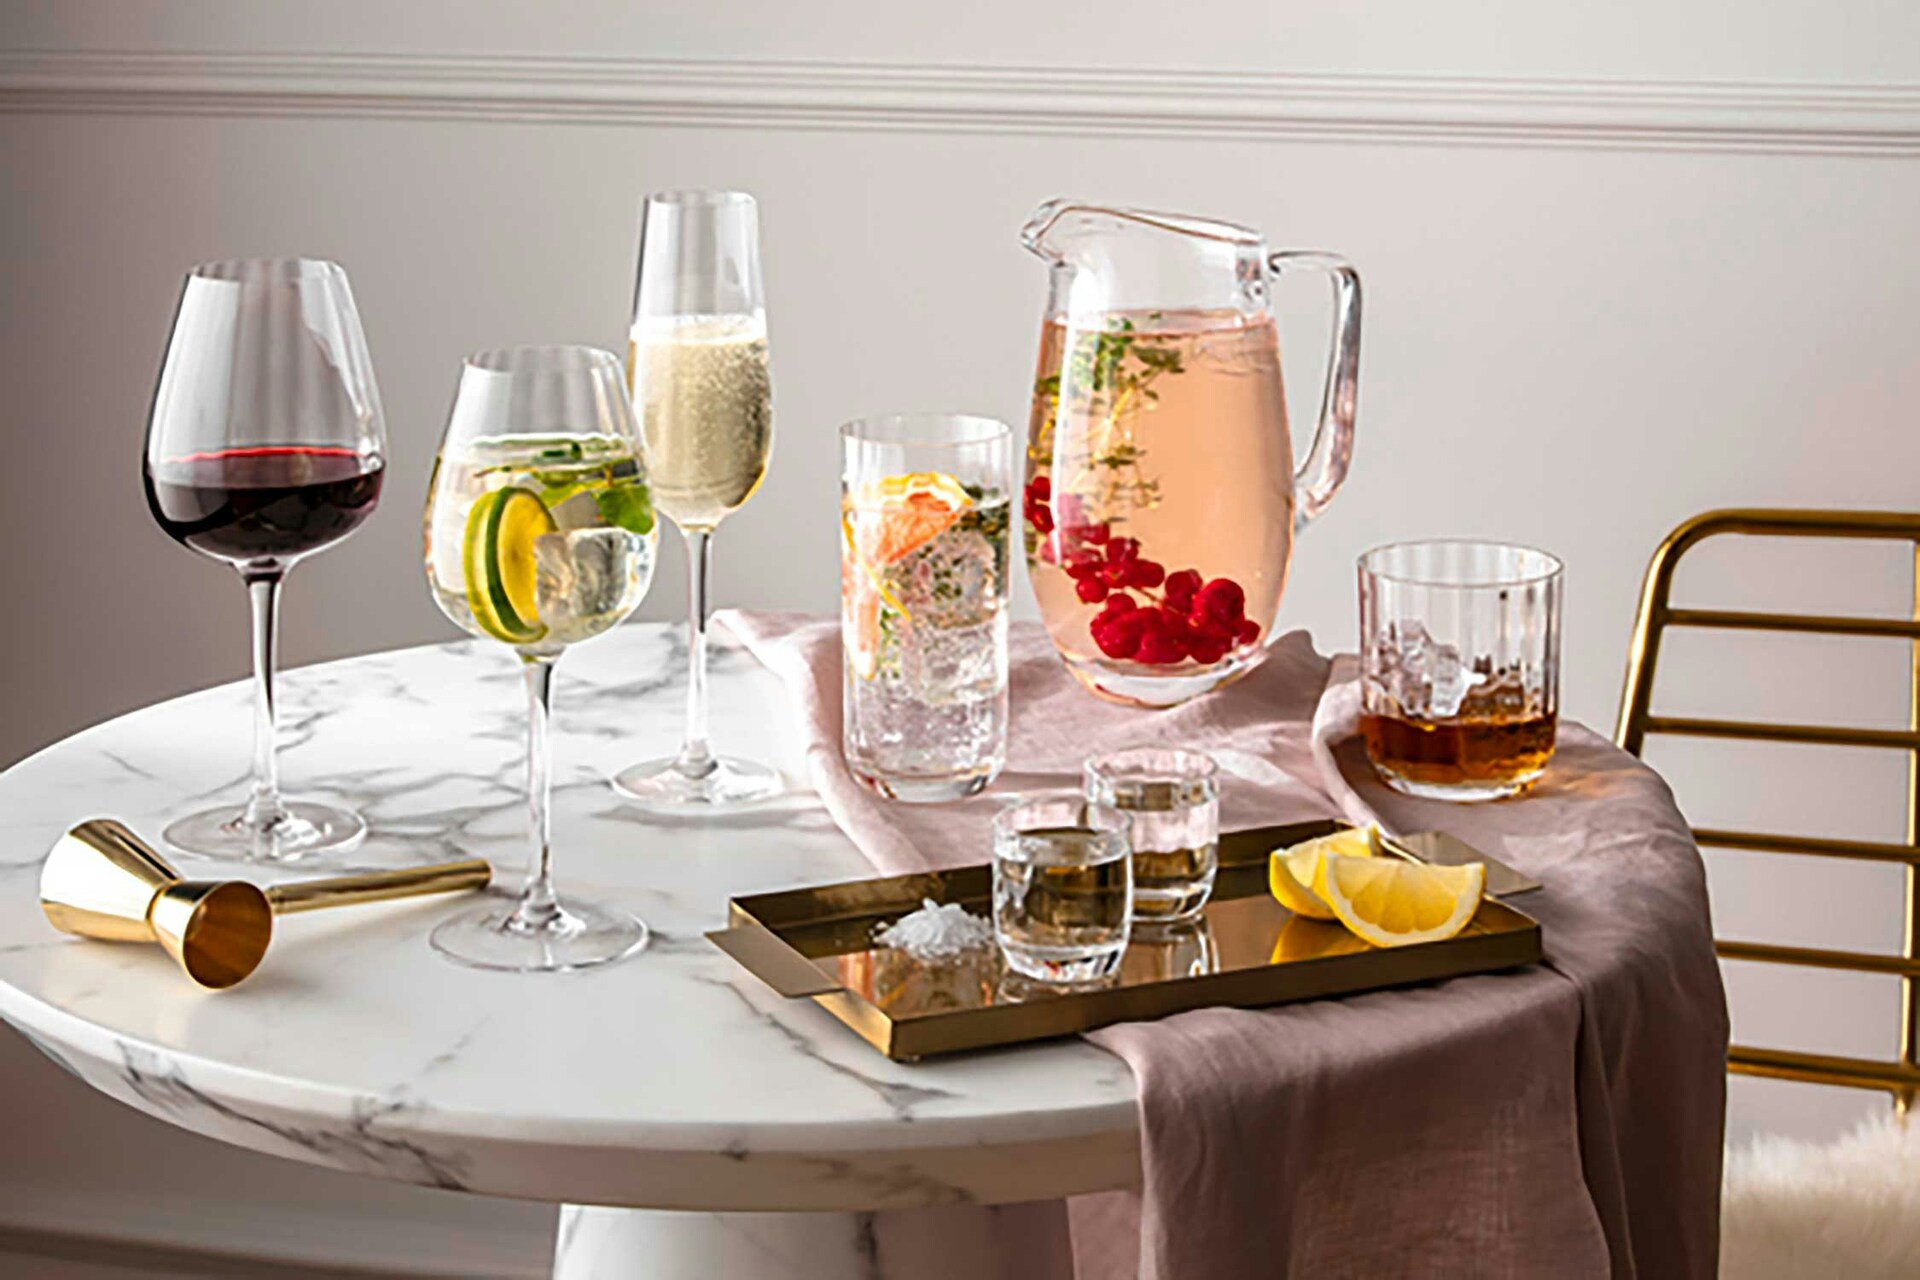 https://royaldesign.com/image/2/villeroy-boch-rose-garden-red-wine-goblet-set-4-pcs-4